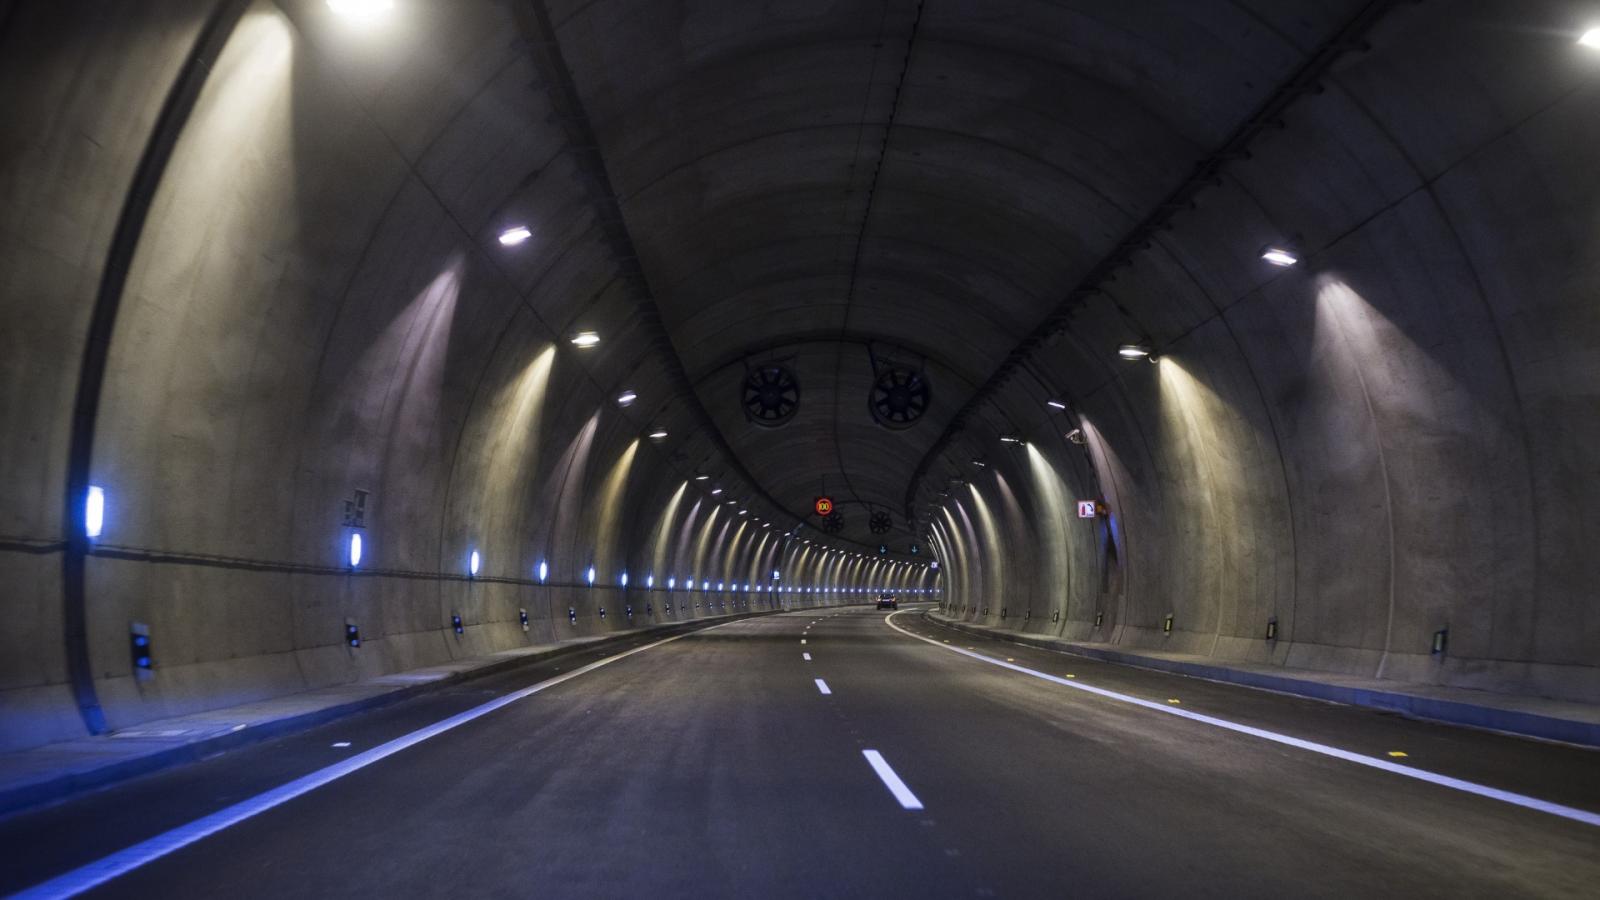 Αυτό είναι το νέο μεγάλο τούνελ που κατασκευάζεται στη Μακεδονία -Πότε θα είναι έτοιμο